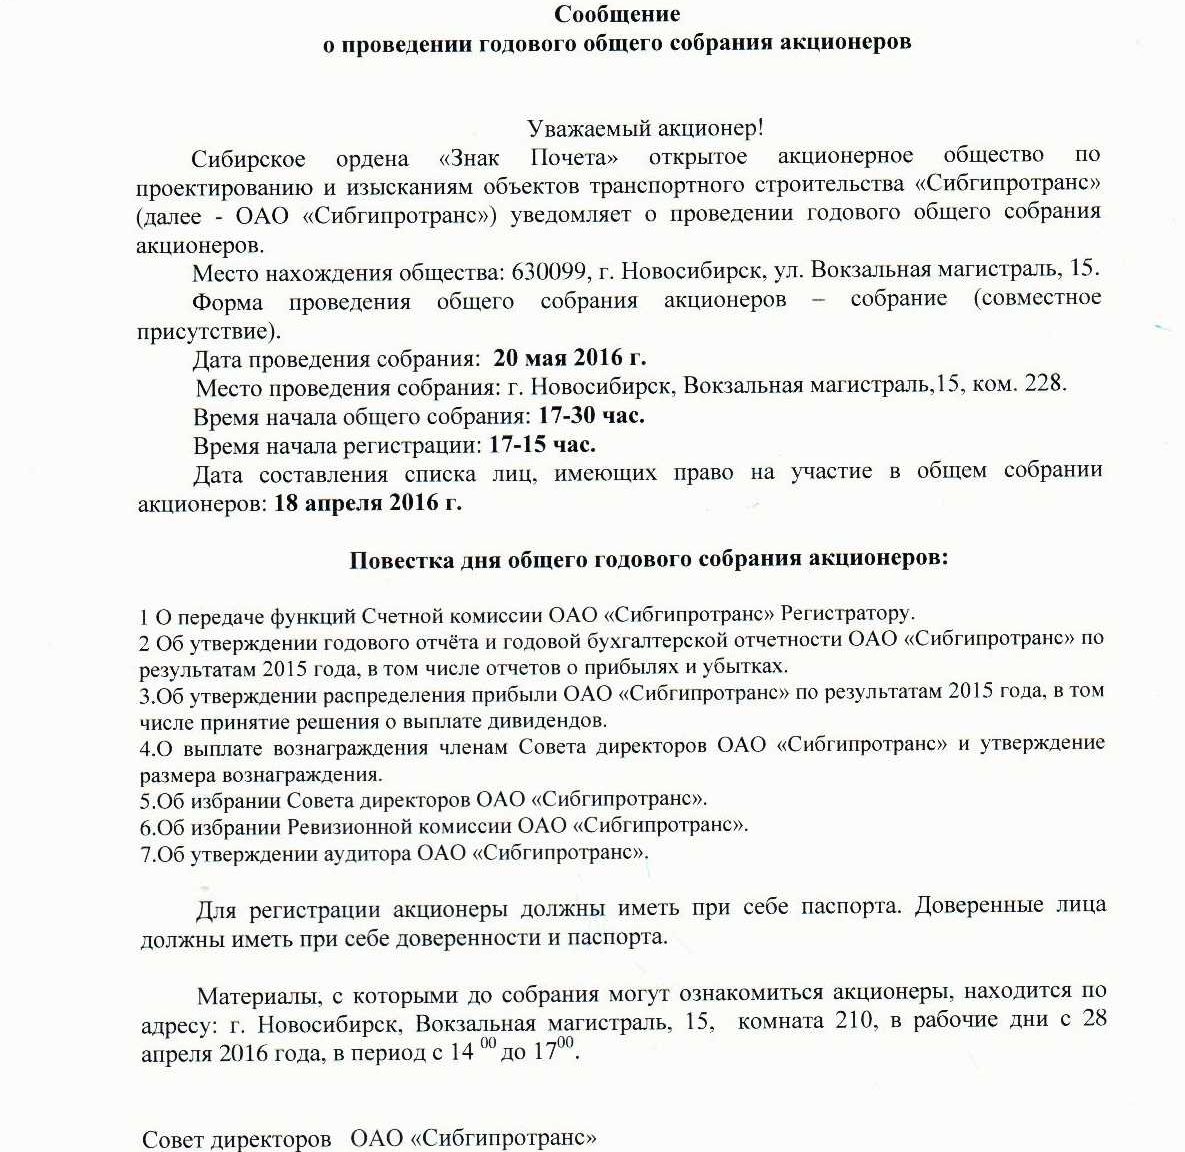 Годовое собрание акционеров ОАО "Сибгипротранс"